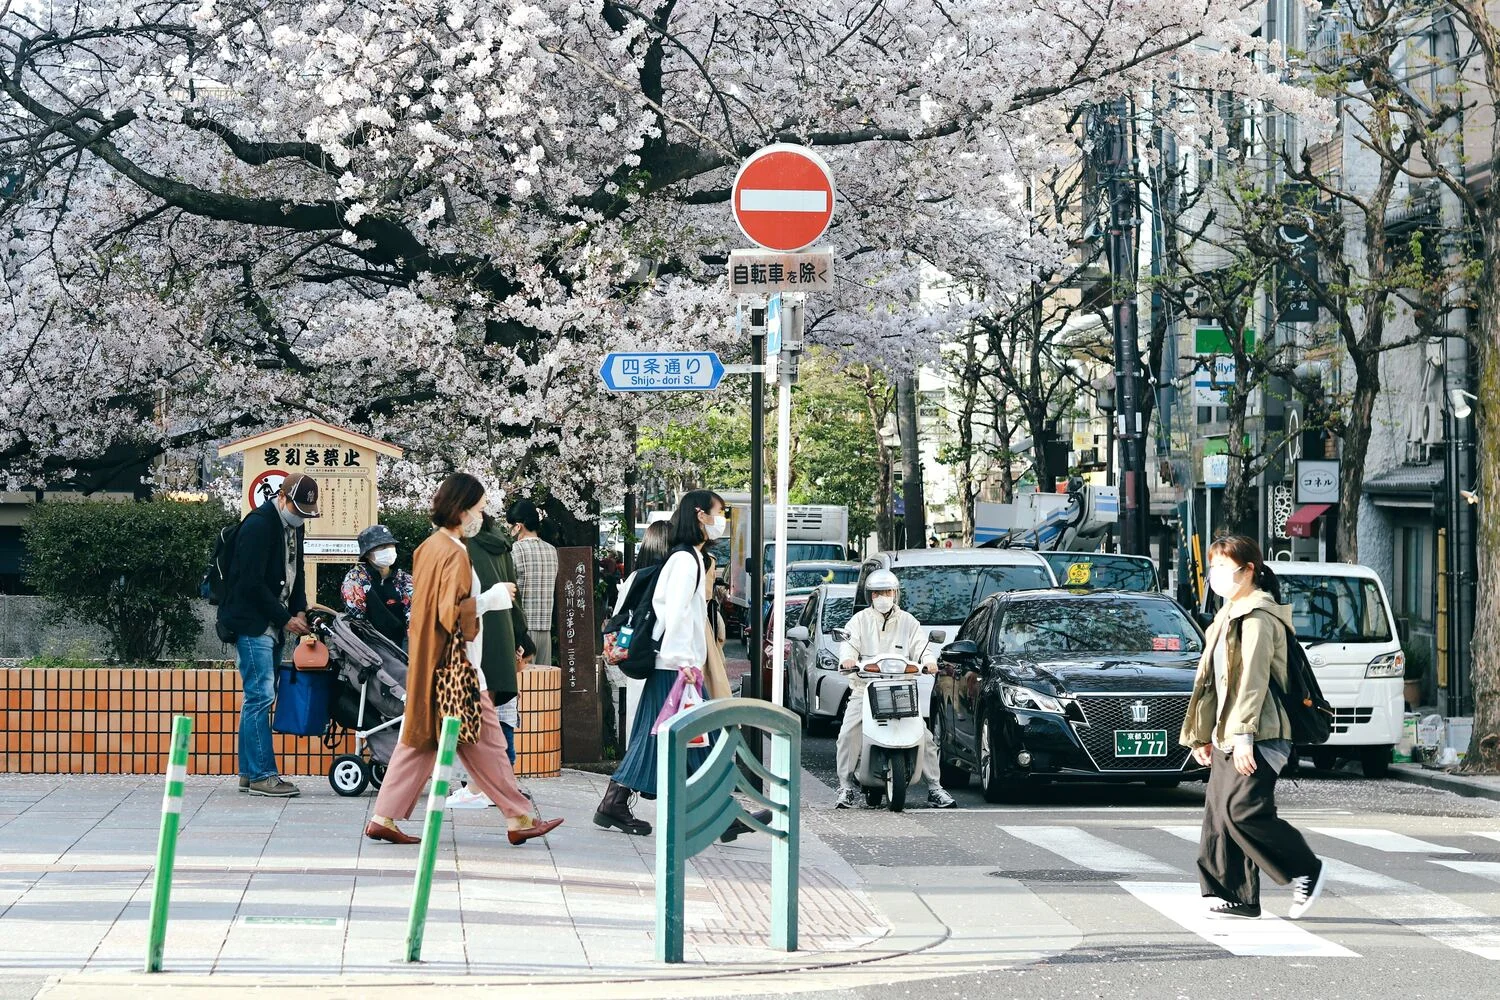 京都街道圖,一台計程車開在路面上,許多路人走在路上,車輛禮讓行人